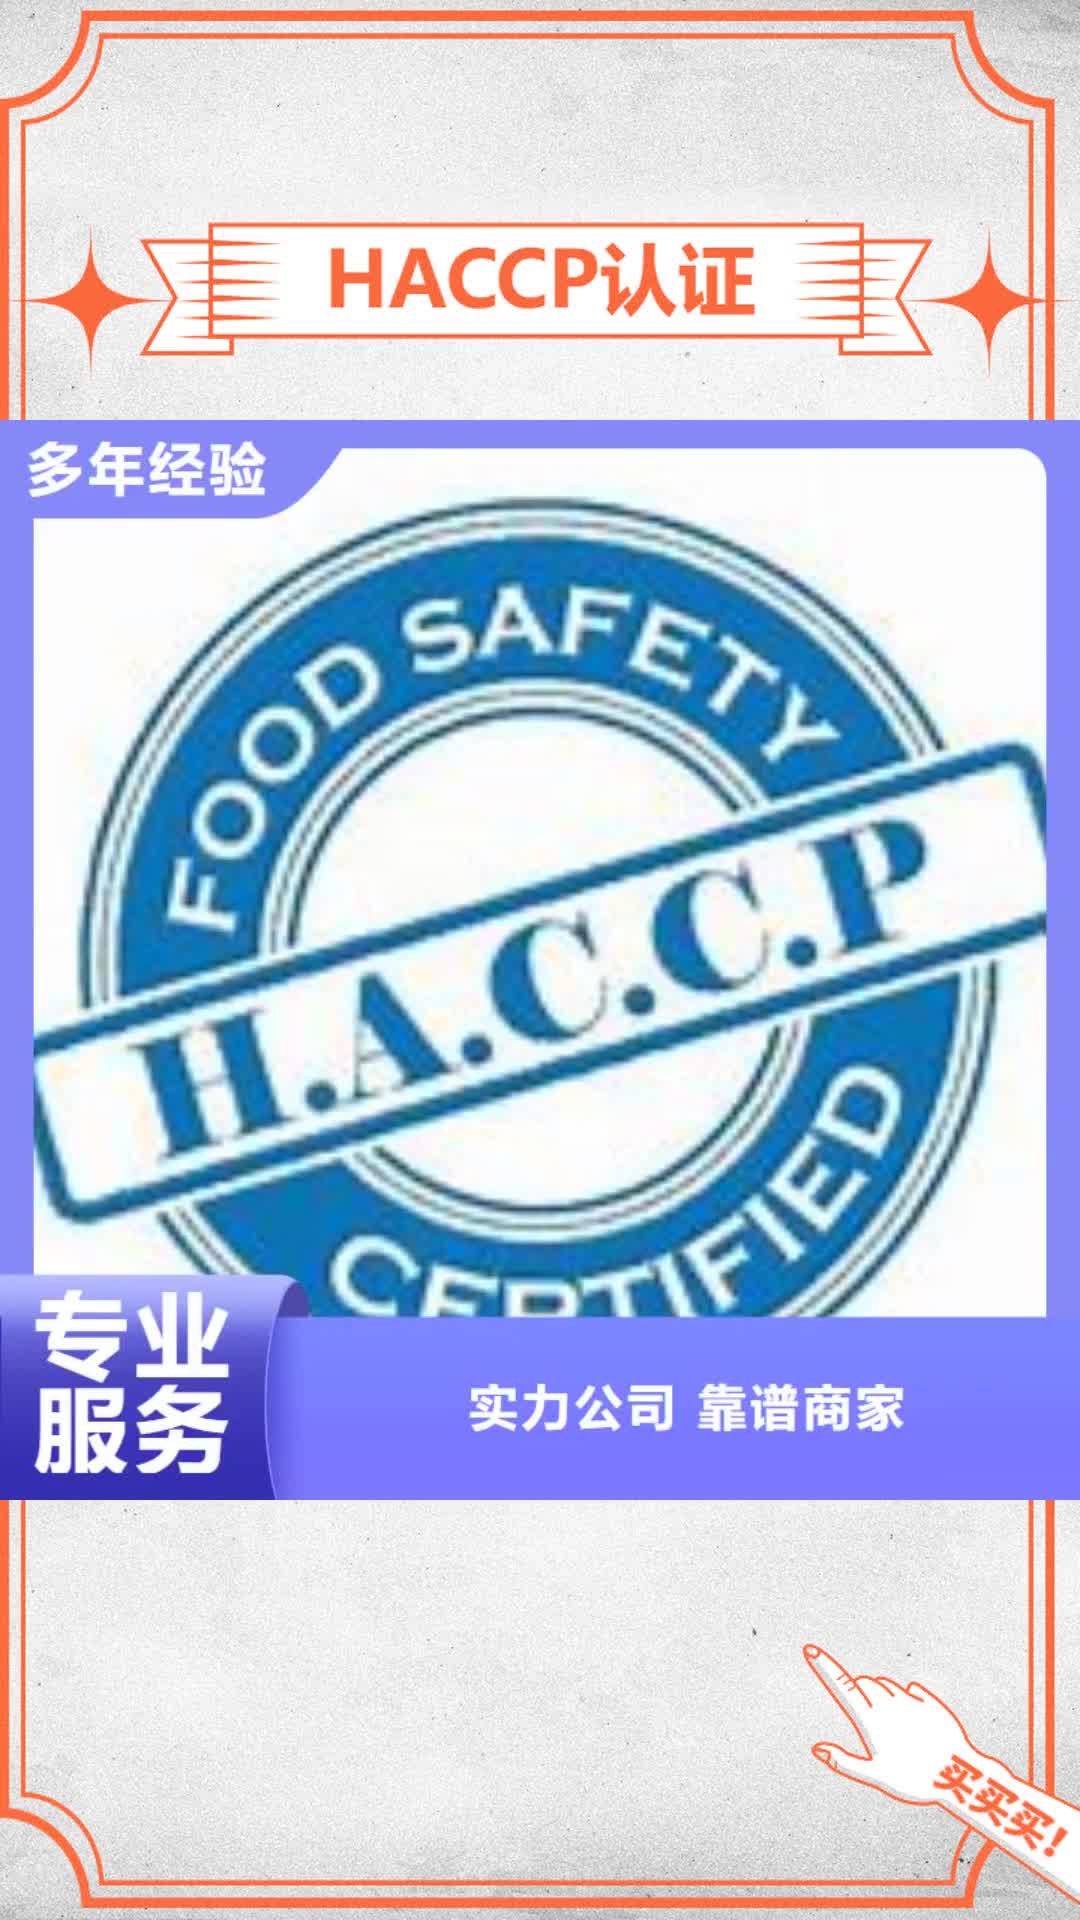 玉溪 HACCP认证_【知识产权认证/GB29490】快速响应